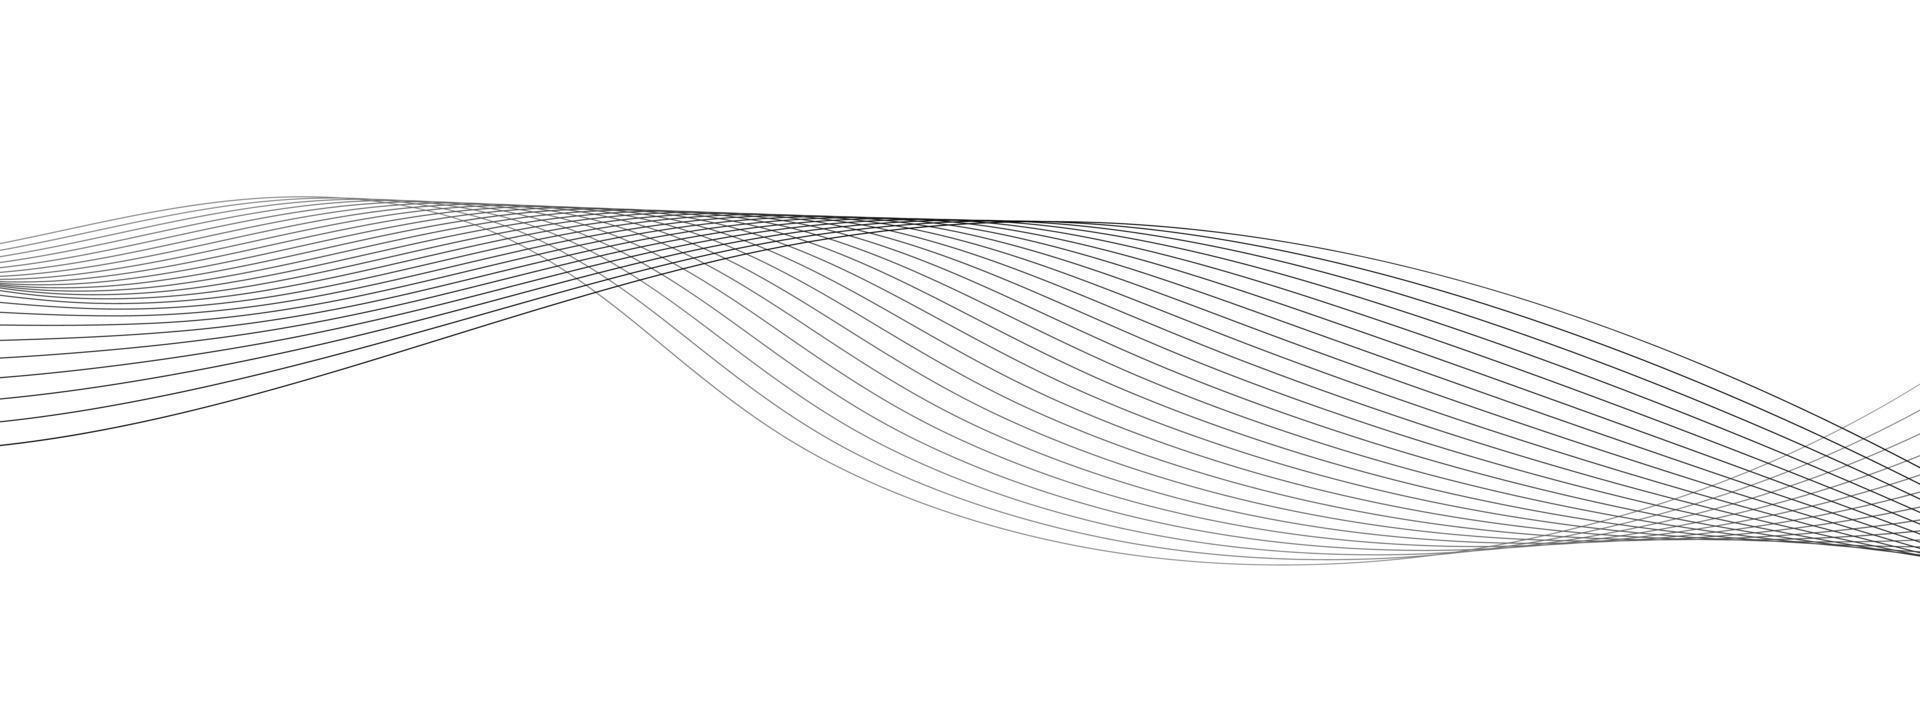 dun lijn golvend abstract vector achtergrond. kromme Golf naadloos patroon.